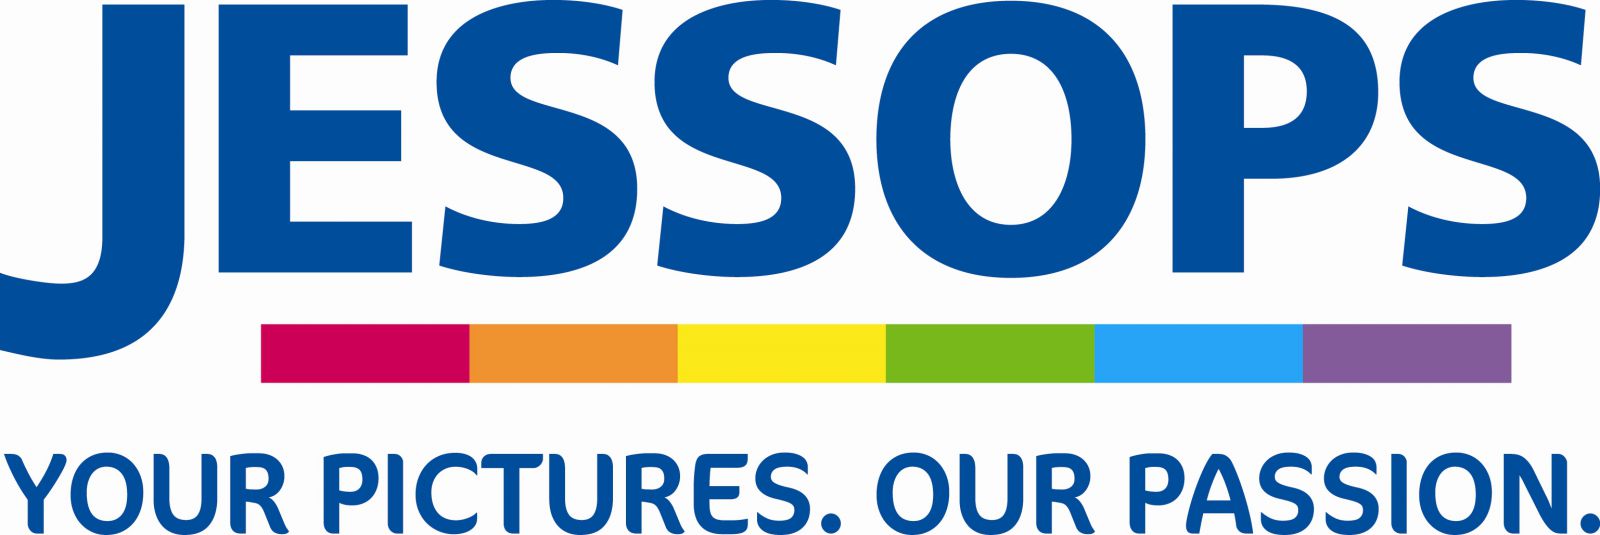 jessops_logo